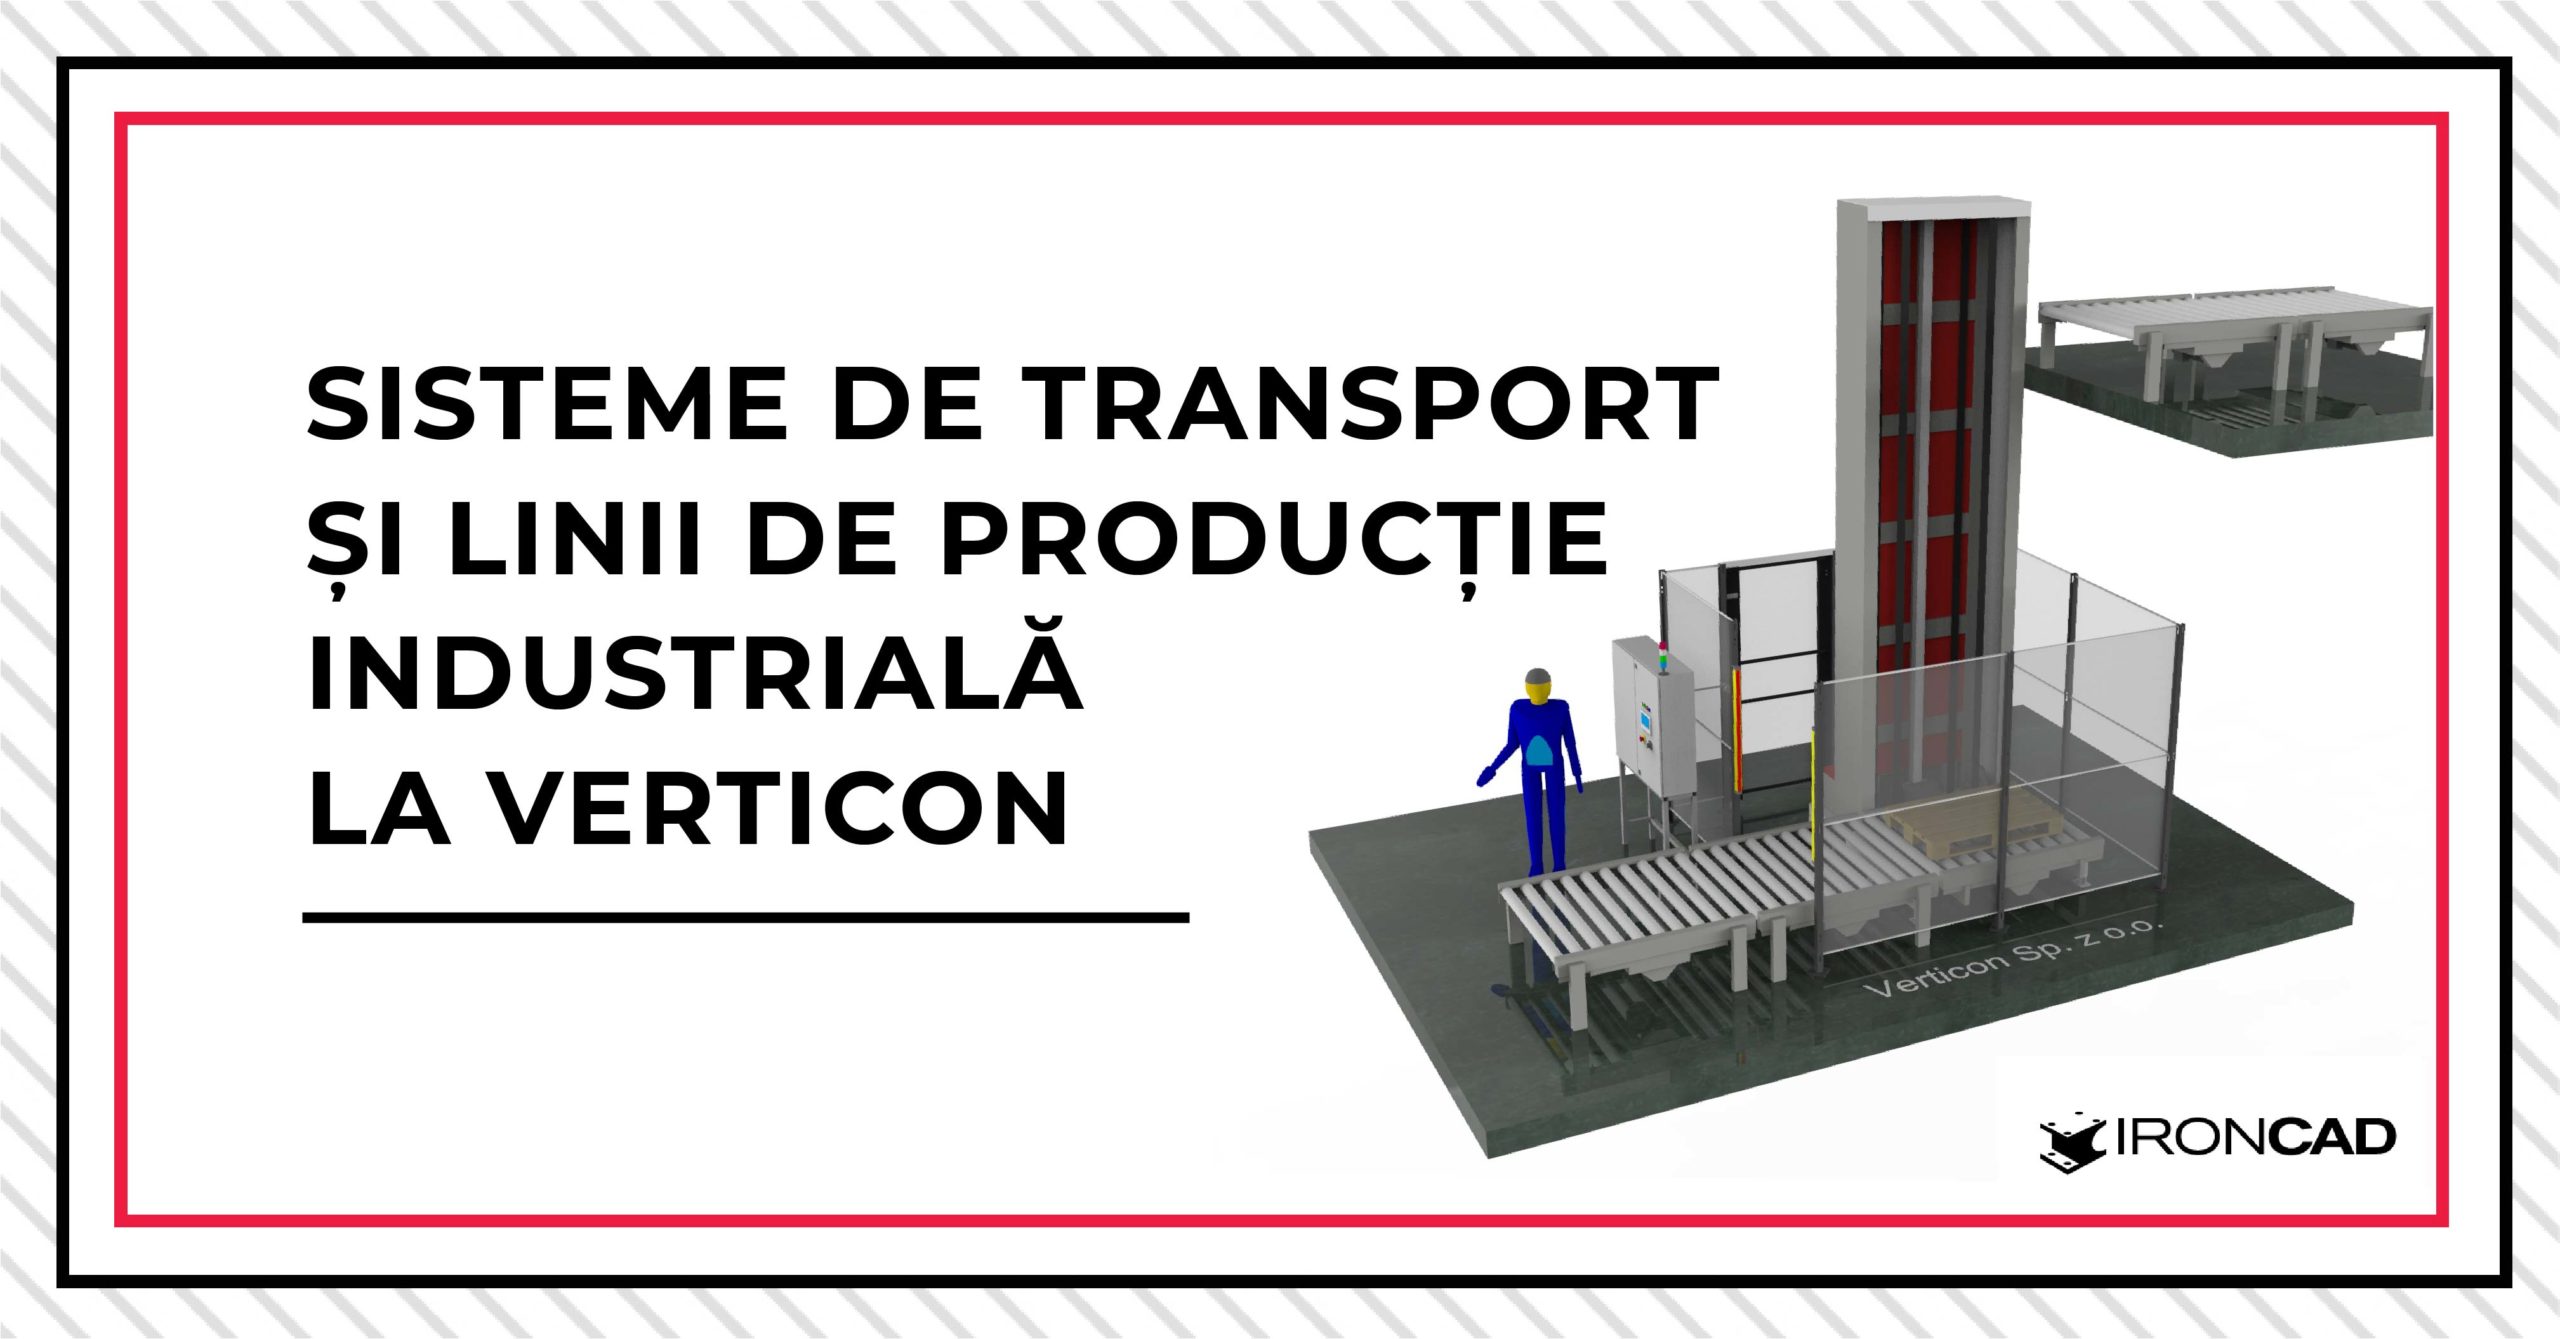 Sisteme de transport și linii de producție industrială la Verticon